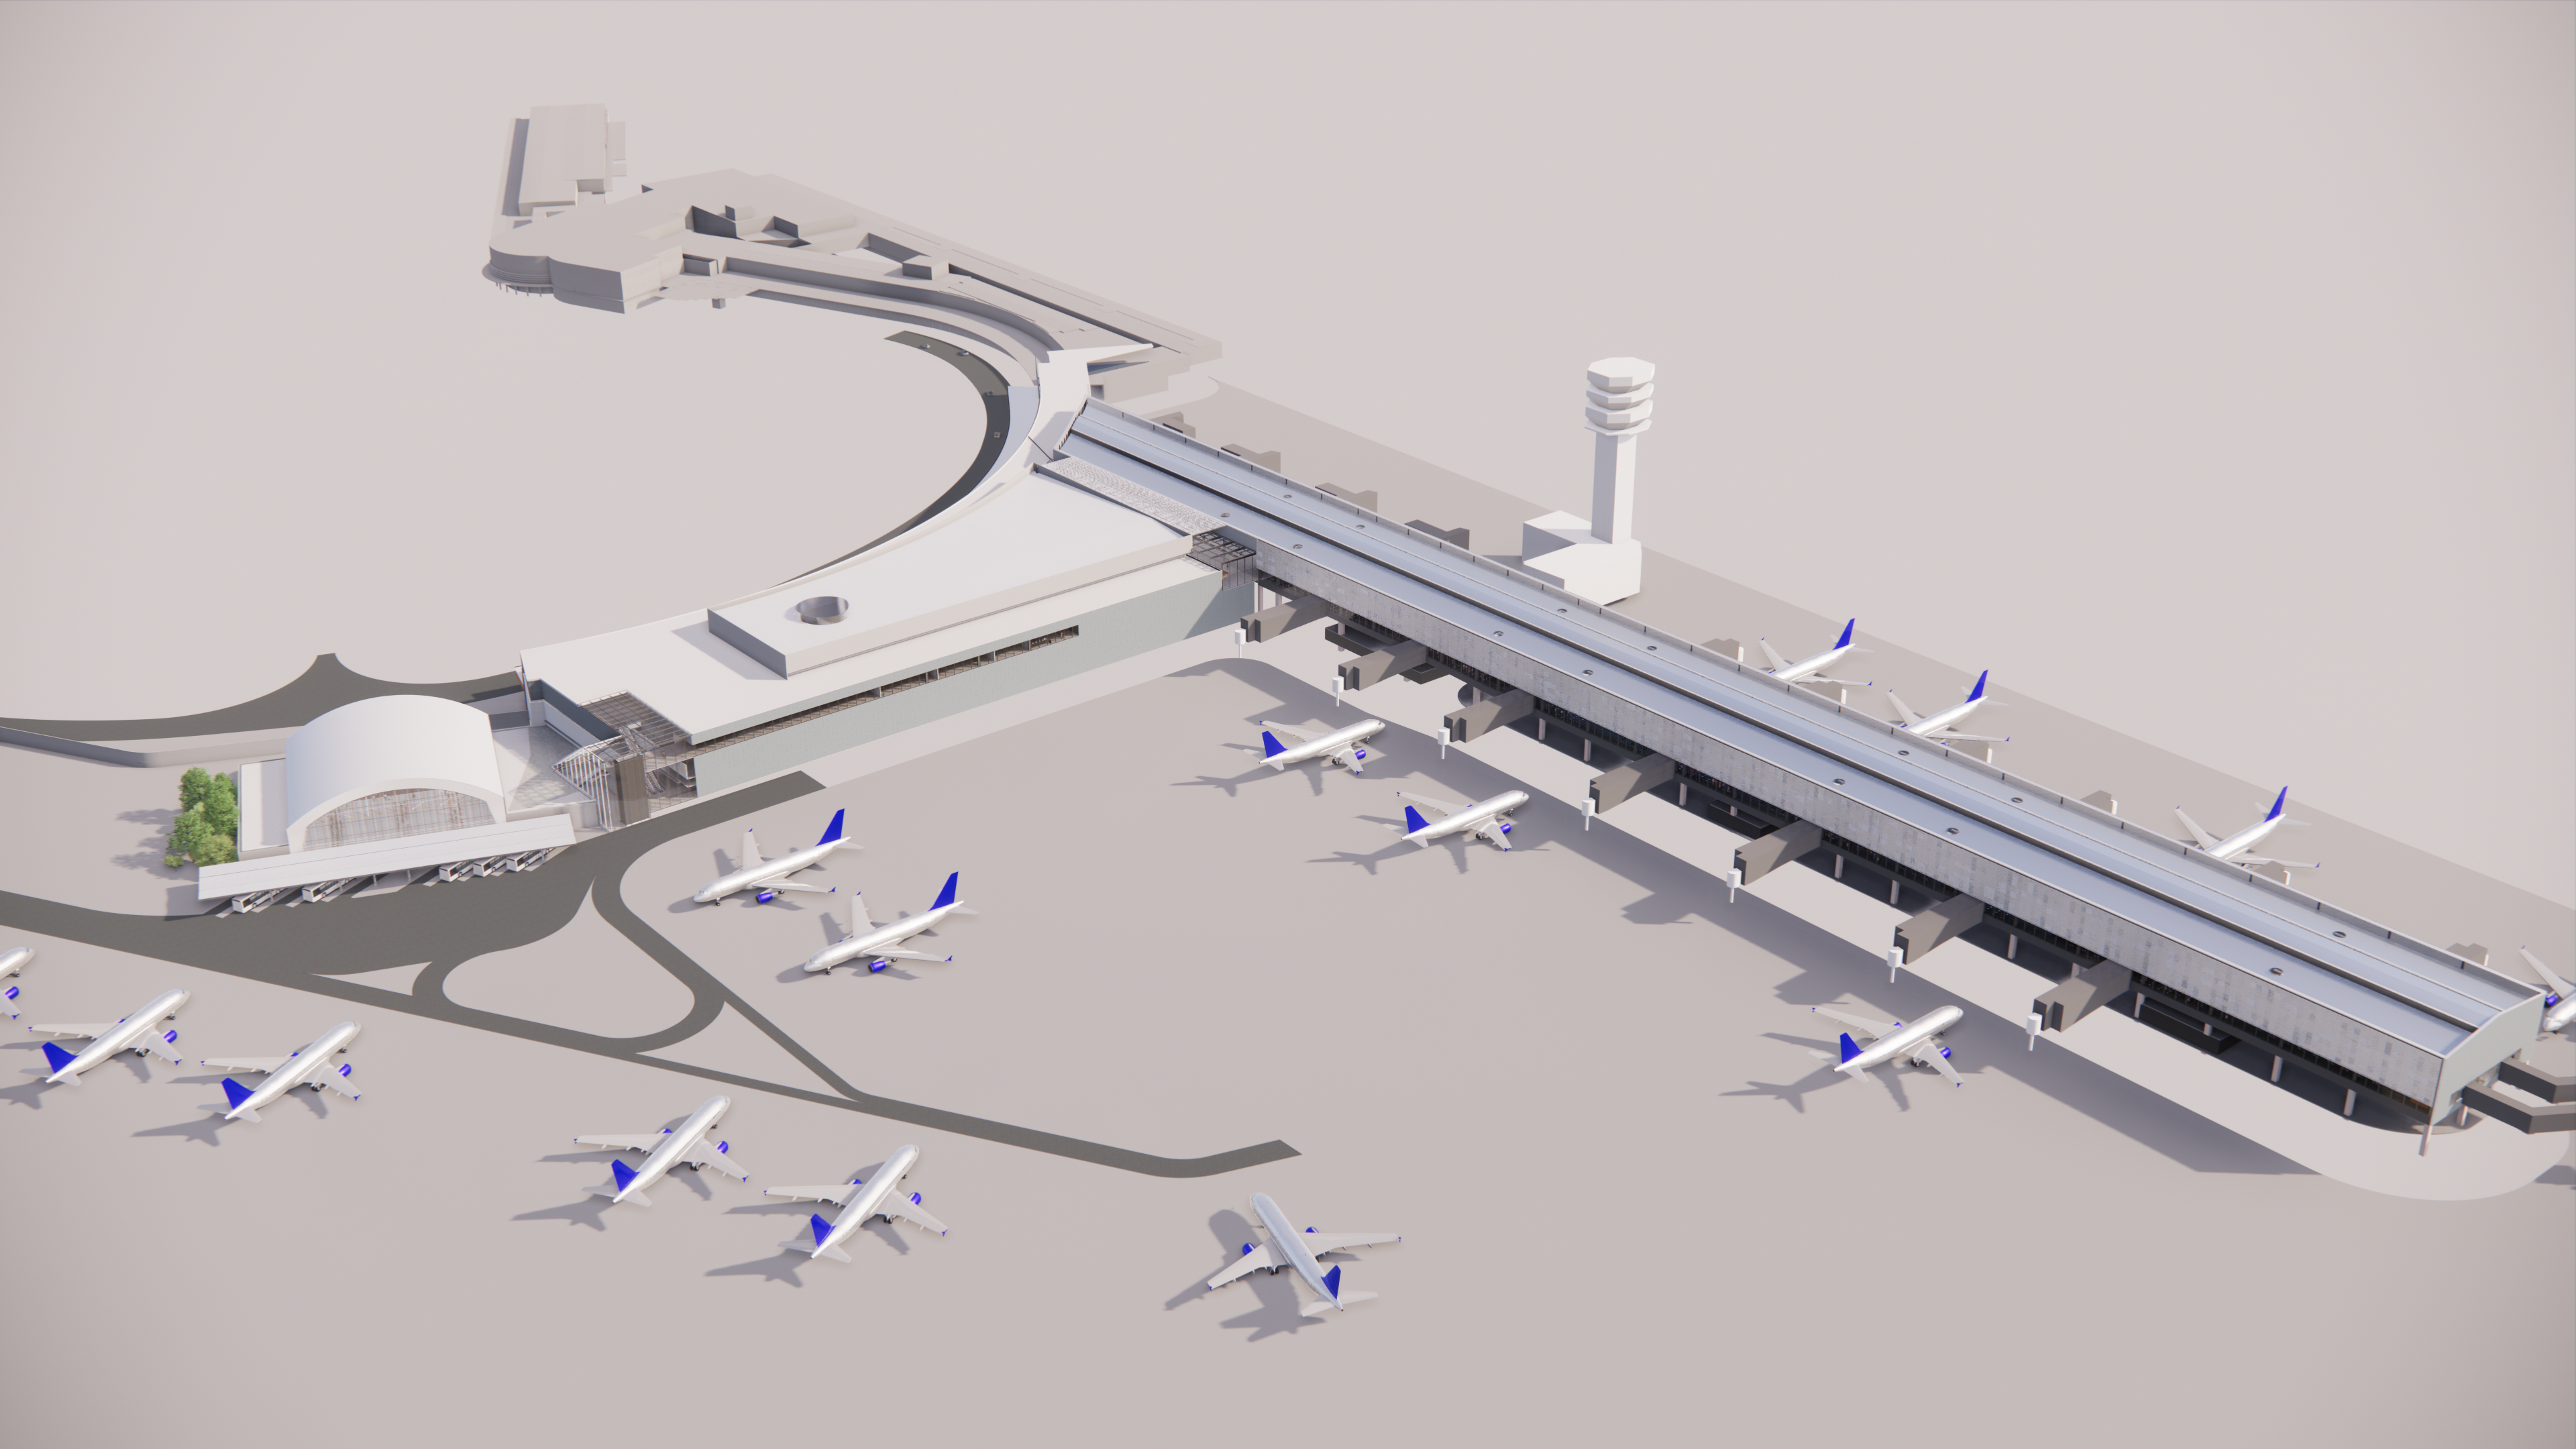 Aeroporto de Congonhas: projeção de como deve ficar o terminal após as obras, previstas para conclusão em 2028